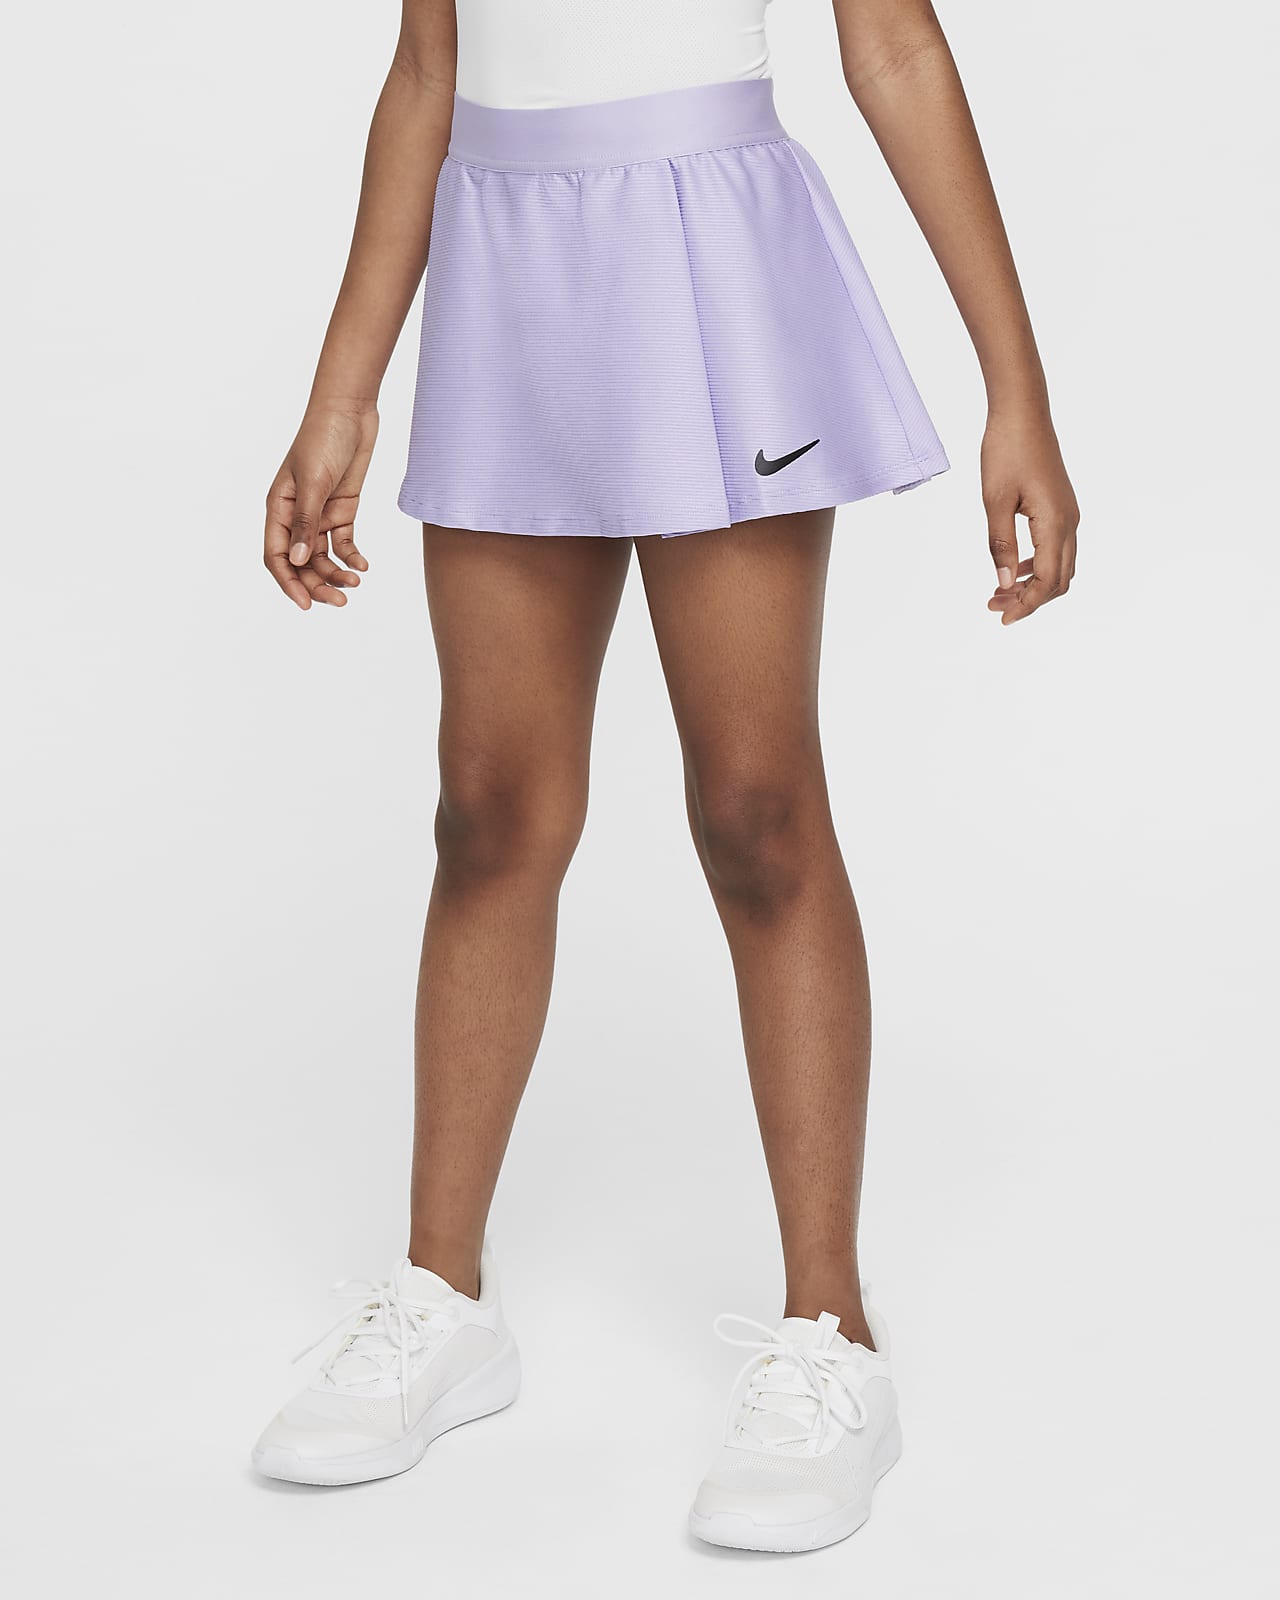 Tenisová sukně NikeCourt Dri-FIT Victory pro větší děti (dívky)